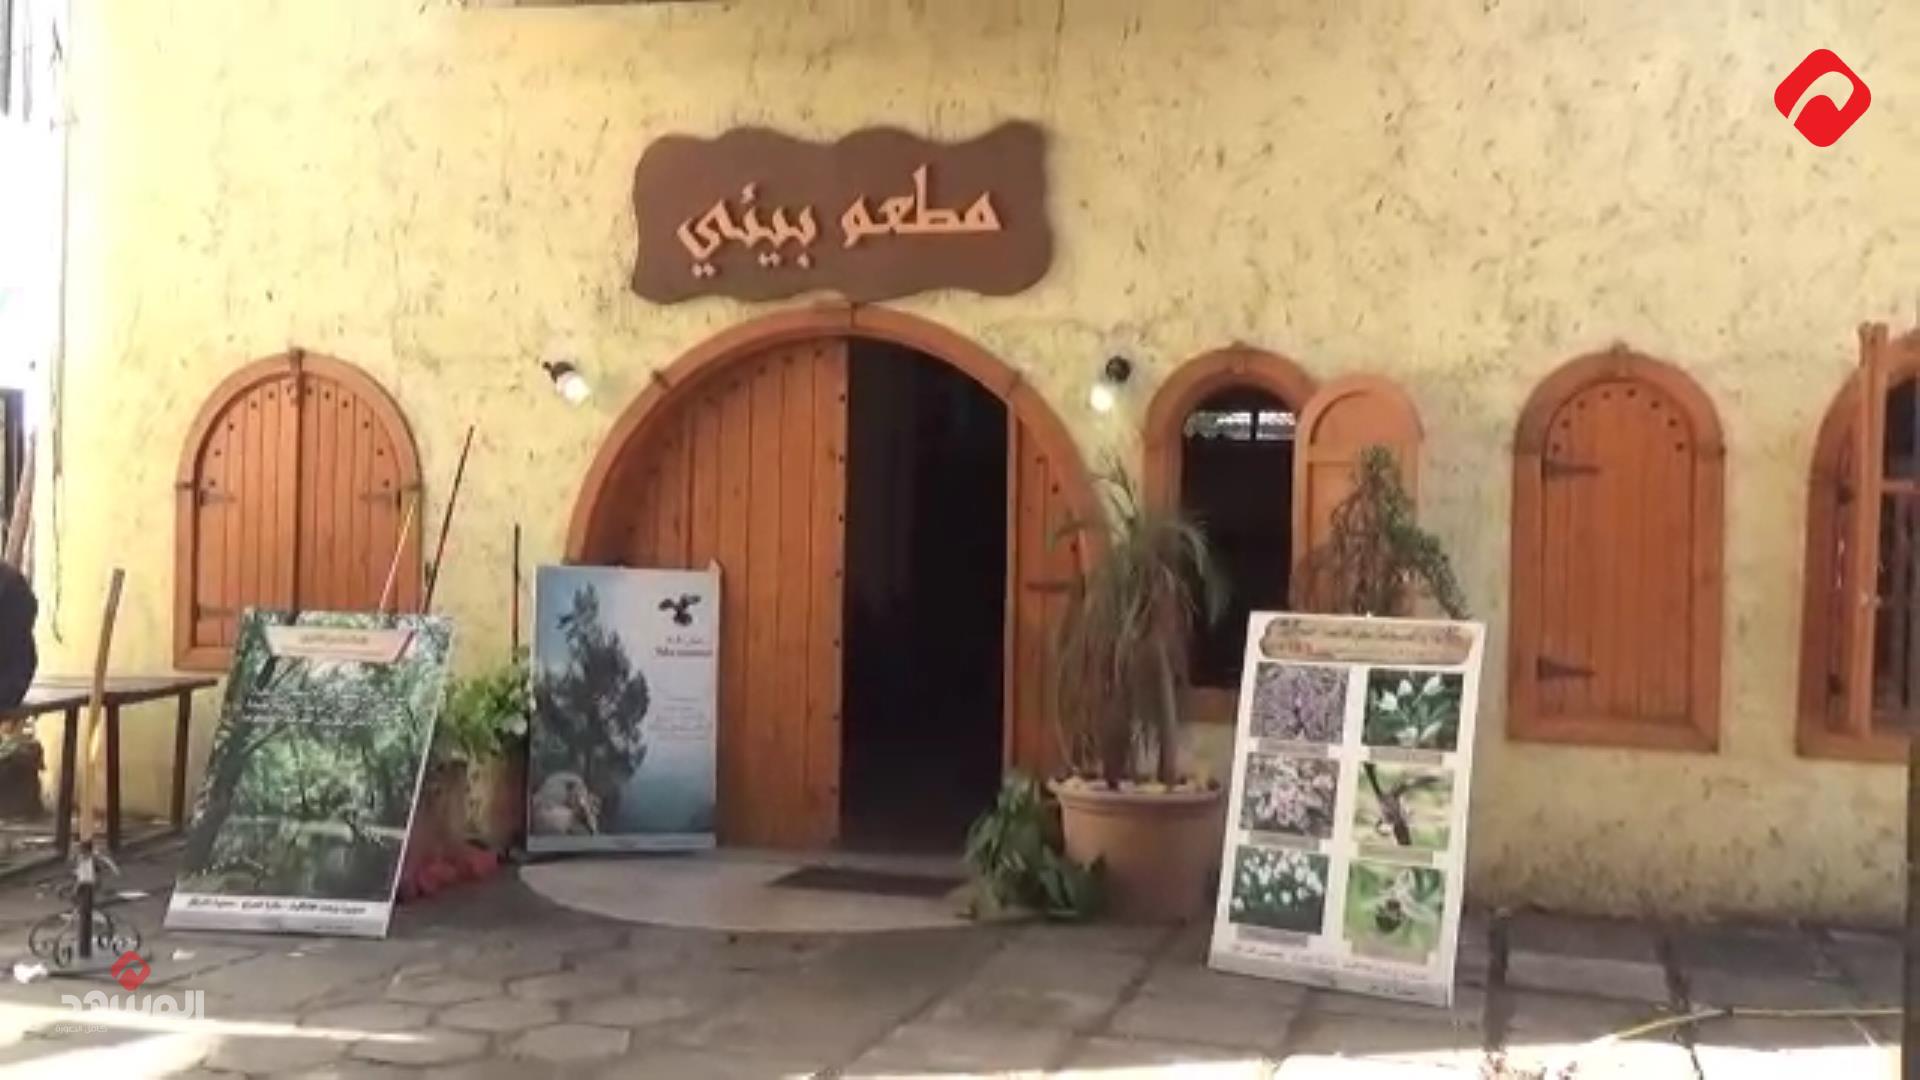 مطعم في مدينة اللاذقية بأجواء ريفية ووجبات تراثية تستحضر رائحة الأجداد (فيديو)